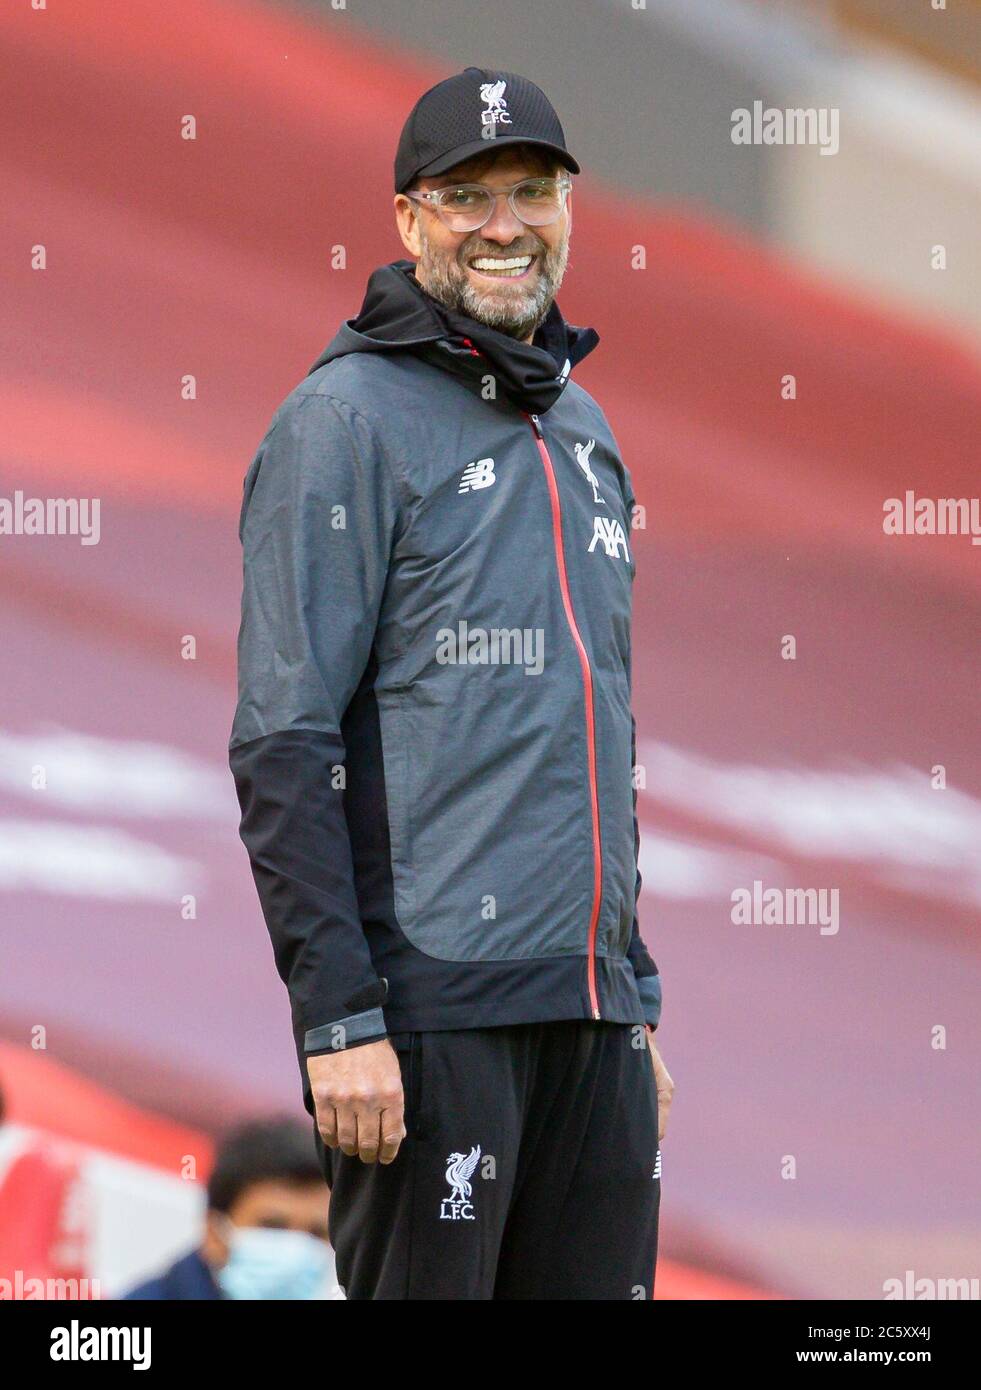 Liverpool. Juli 2020. Liverpools Manager Jürgen Klopp reagiert während des Premier League-Spiels zwischen Liverpool und Aston Villa am 5. Juli 2020 im Anfield in Liverpool, Großbritannien.NUR FÜR REDAKTIONELLE VERWENDUNG. NICHT FÜR MARKETING- ODER WERBEKAMPAGNEN. KEINE VERWENDUNG MIT NICHT AUTORISIERTEN AUDIO-, VIDEO-, DATEN-, FIXTURE-LISTEN, CLUB/LEAGUE-LOGOS ODER „LIVE“-DIENSTEN. ONLINE-IN-MATCH-NUTZUNG AUF 45 BILDER BESCHRÄNKT, KEINE VIDEOEMULATION. KEINE VERWENDUNG IN WETTEN, SPIELEN ODER EINZELNEN CLUB/LEAGUE/PLAYER-PUBLIKATIONEN. Quelle: Xinhua/Alamy Live News Stockfoto